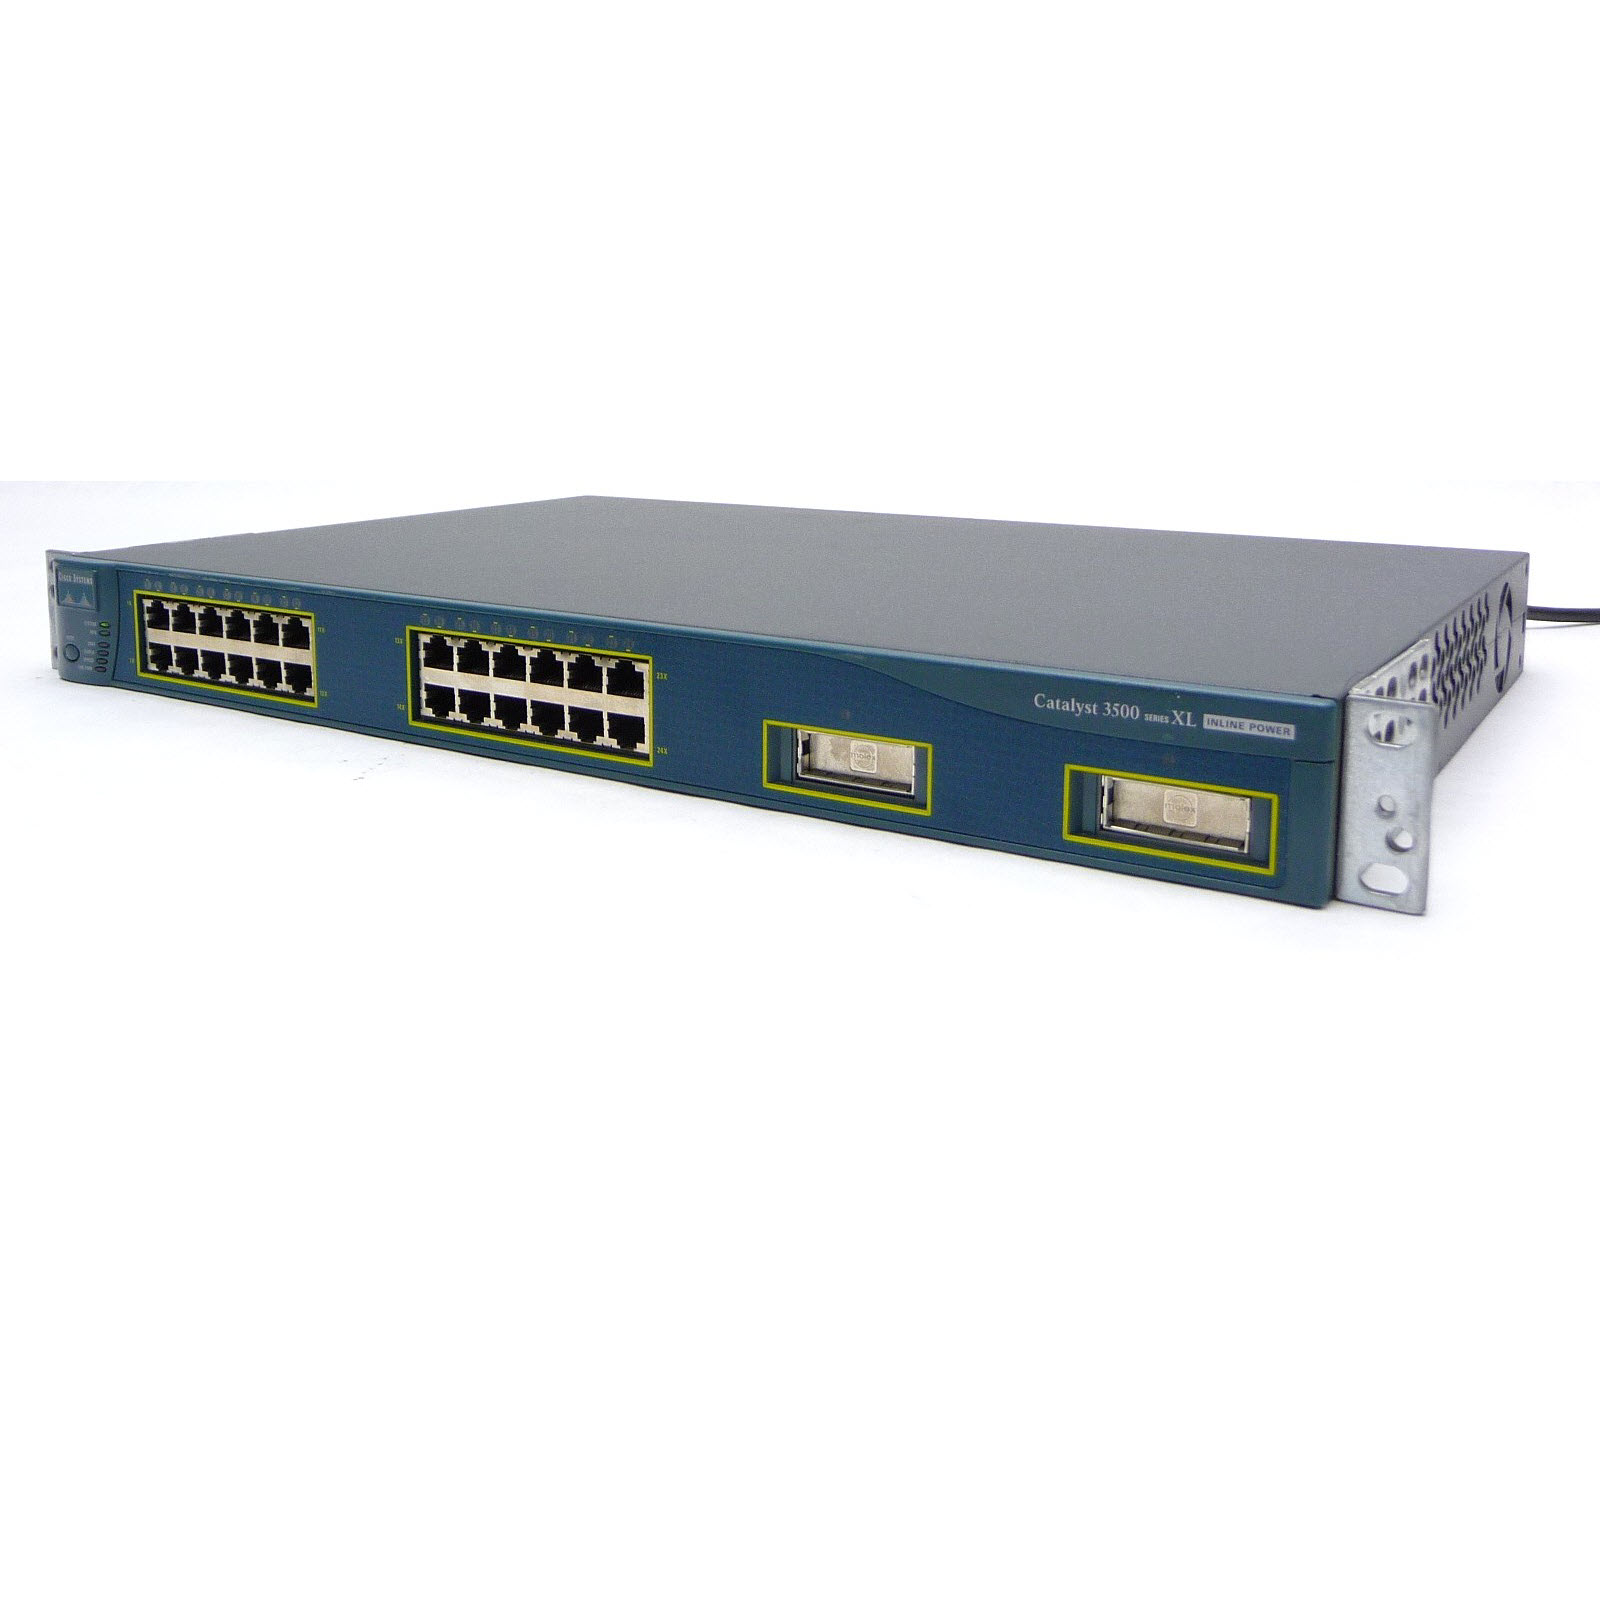 a buon mercato Cisco Catalyst 3500 Series XL 24-port Ethernet Switch una spedizione veloce JHC3 